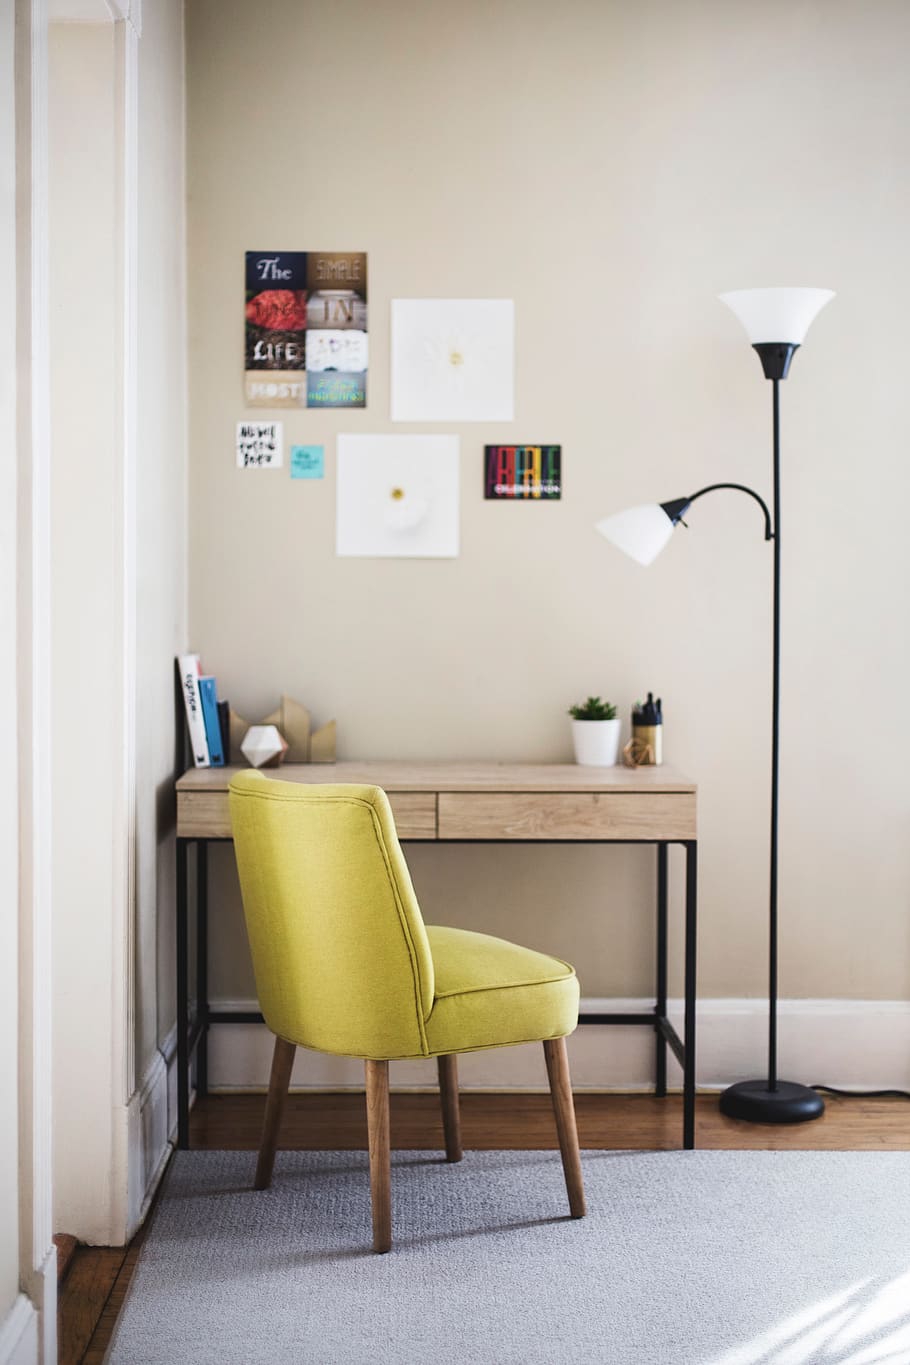 meja, kursi, lampu, kamar, karpet, buku, pulpen, poster, stiker gambar, foto